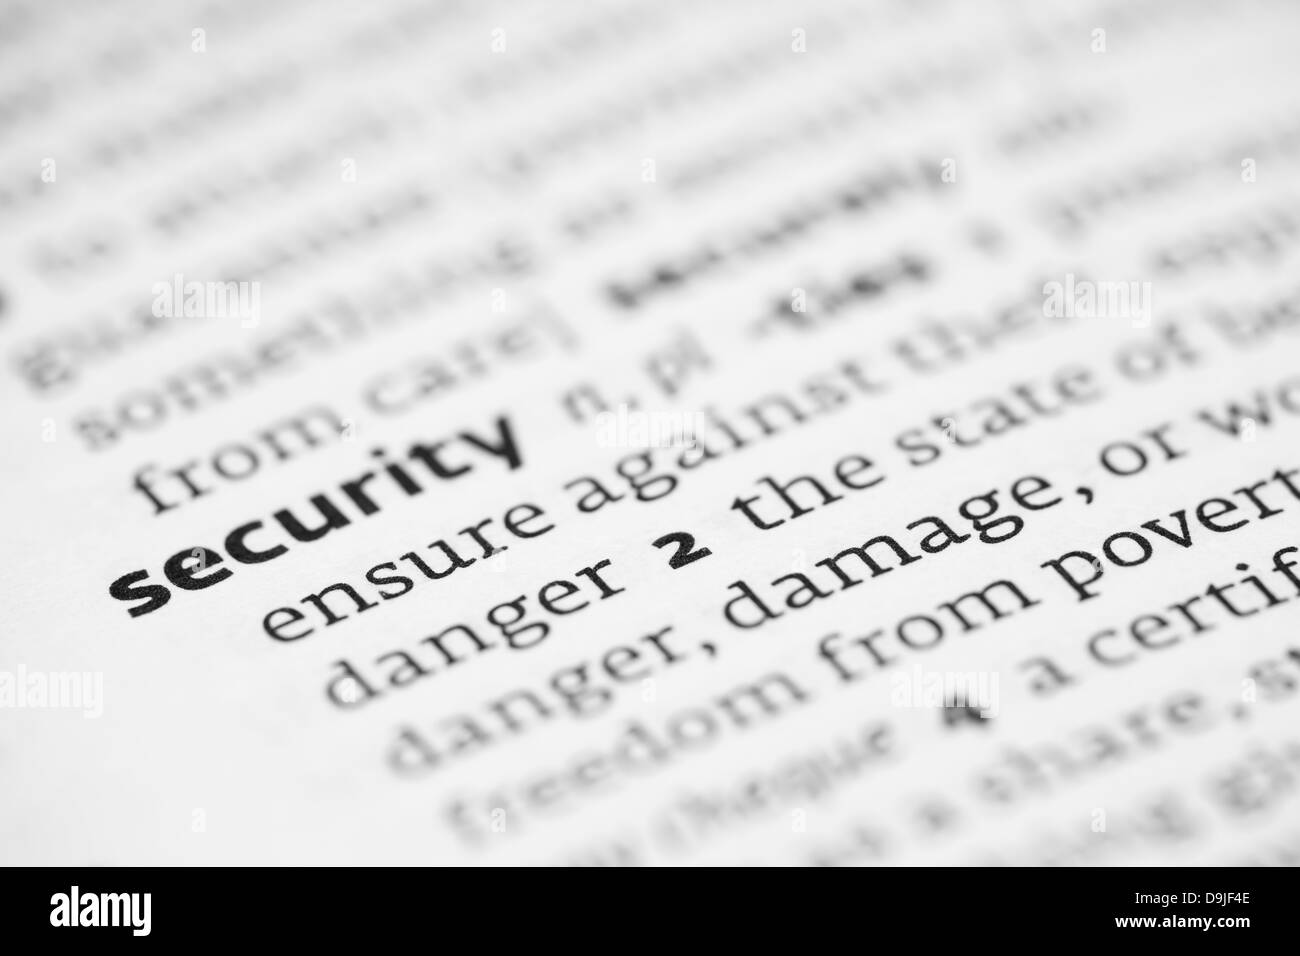 Définition de sécurité dans un dictionnaire Banque D'Images